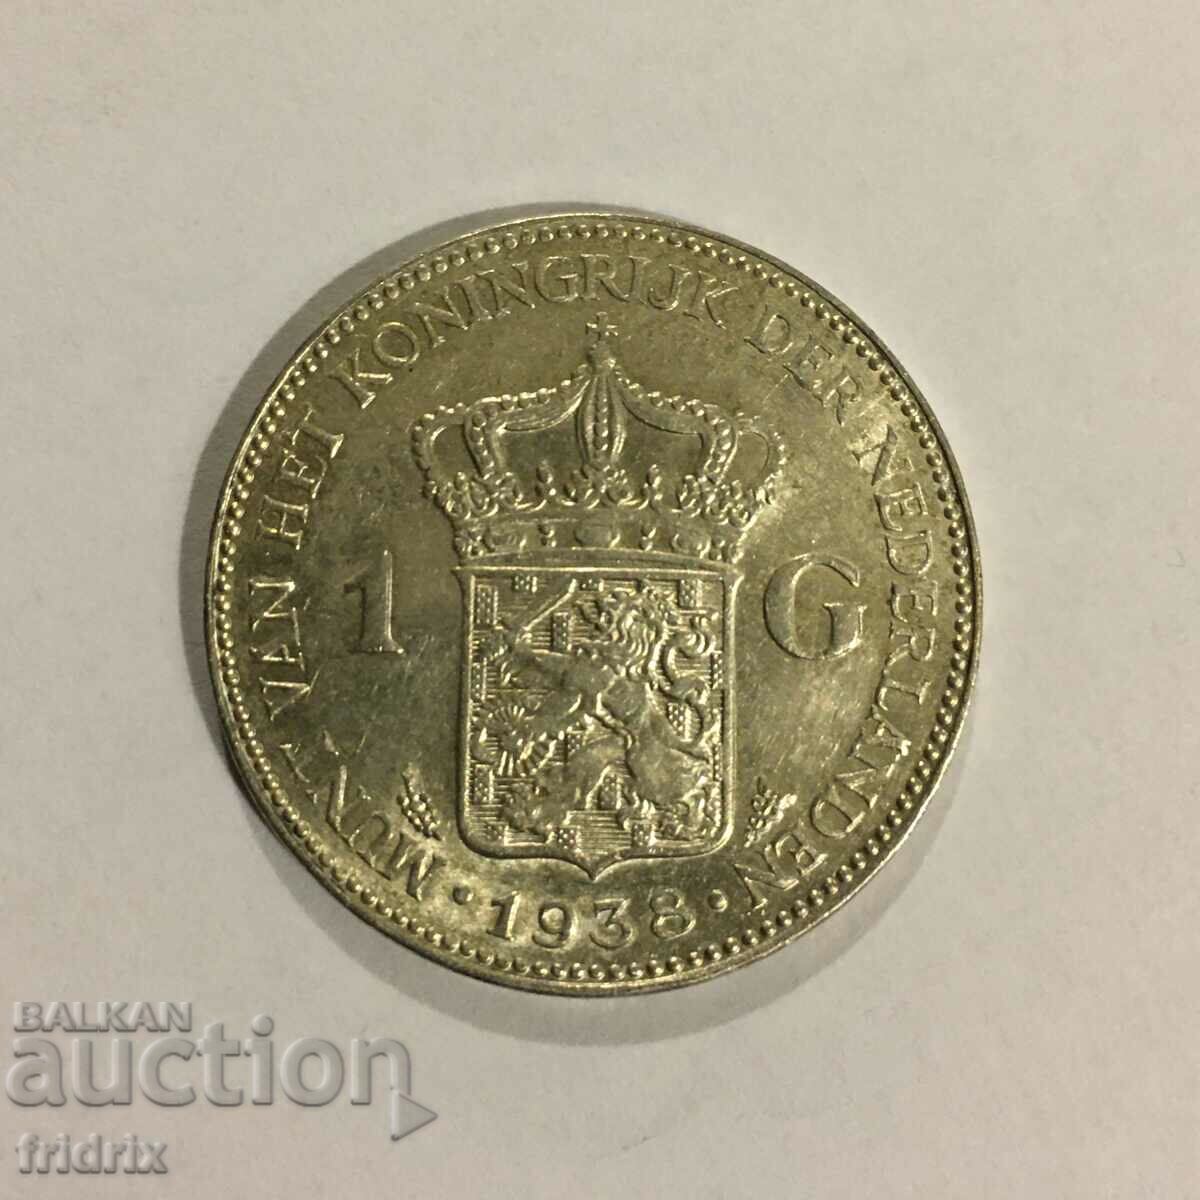 Netherlands 1 gulden 1938 / Netherlands 1 gulden 1938 UNC